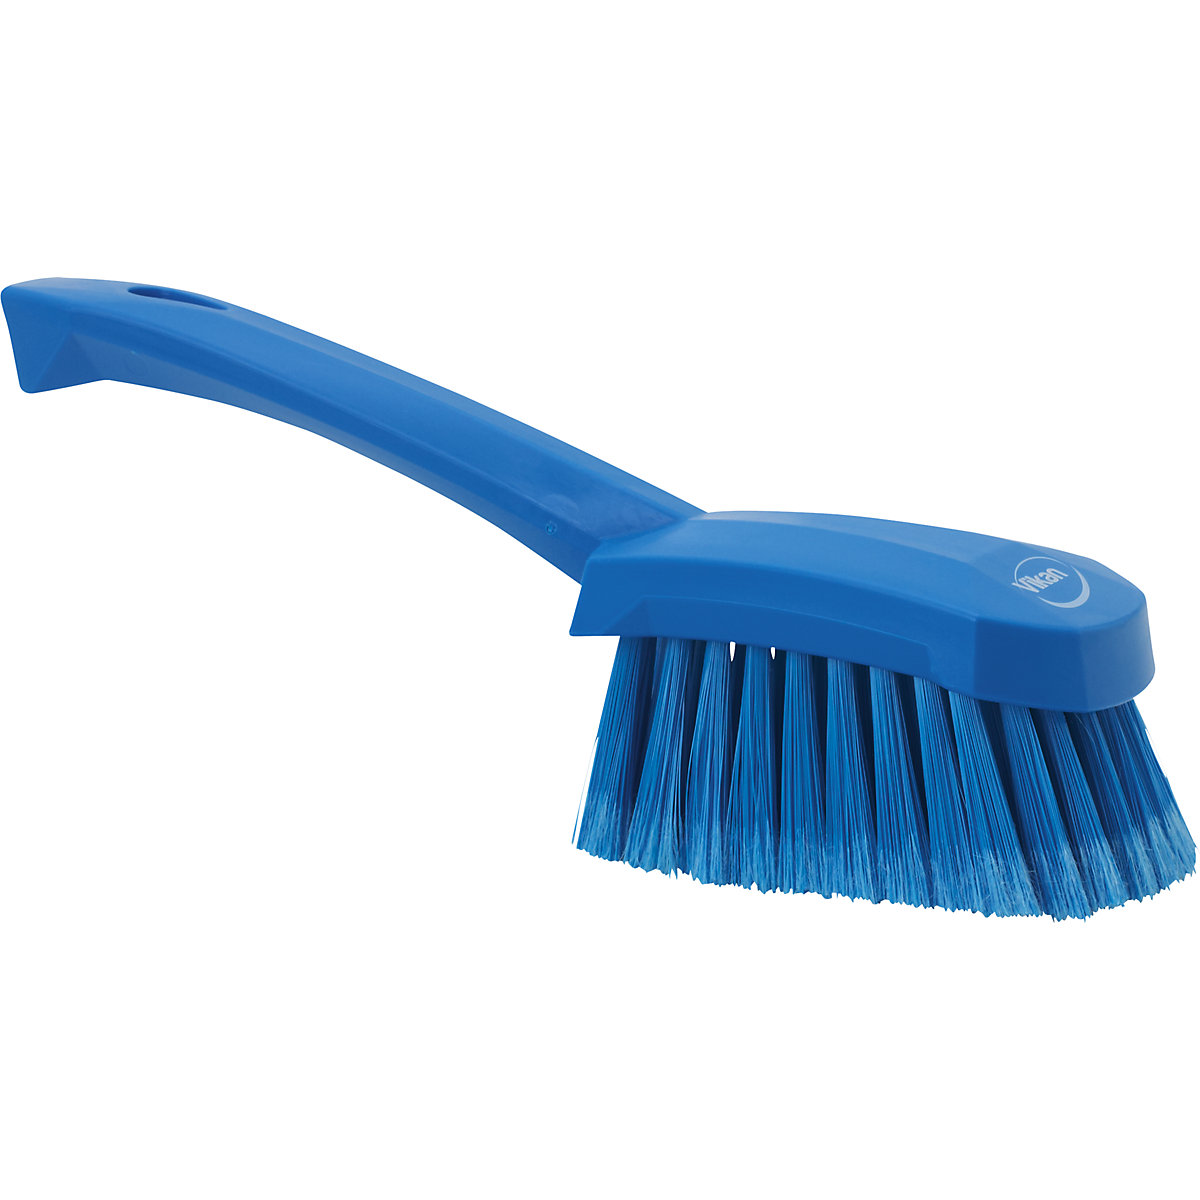 Vikan – Short handled hand brush, soft, spliced, pack of 10, blue